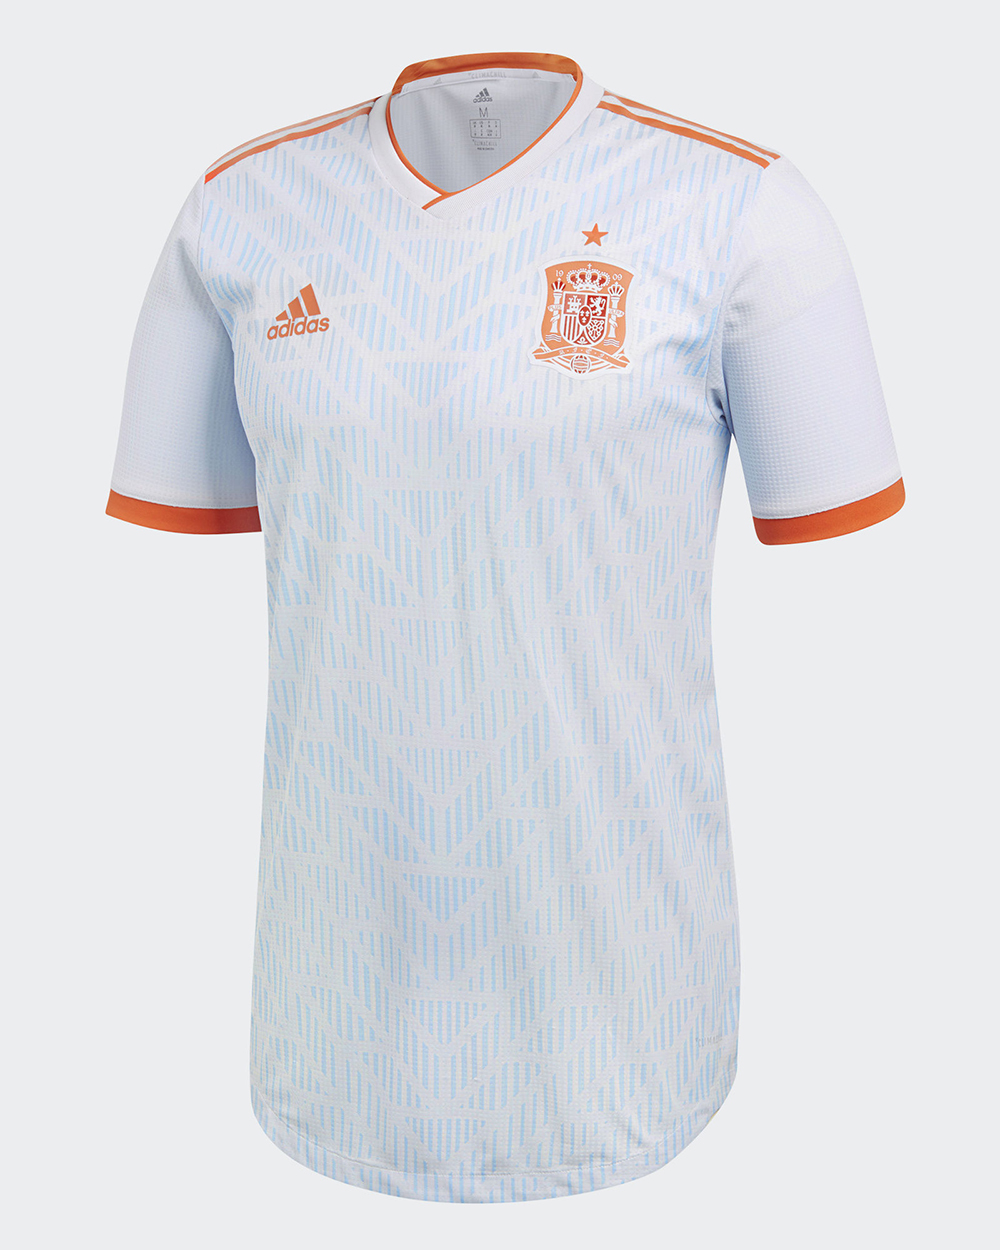 Camiseta alternativa adidas de España Mundial 2018